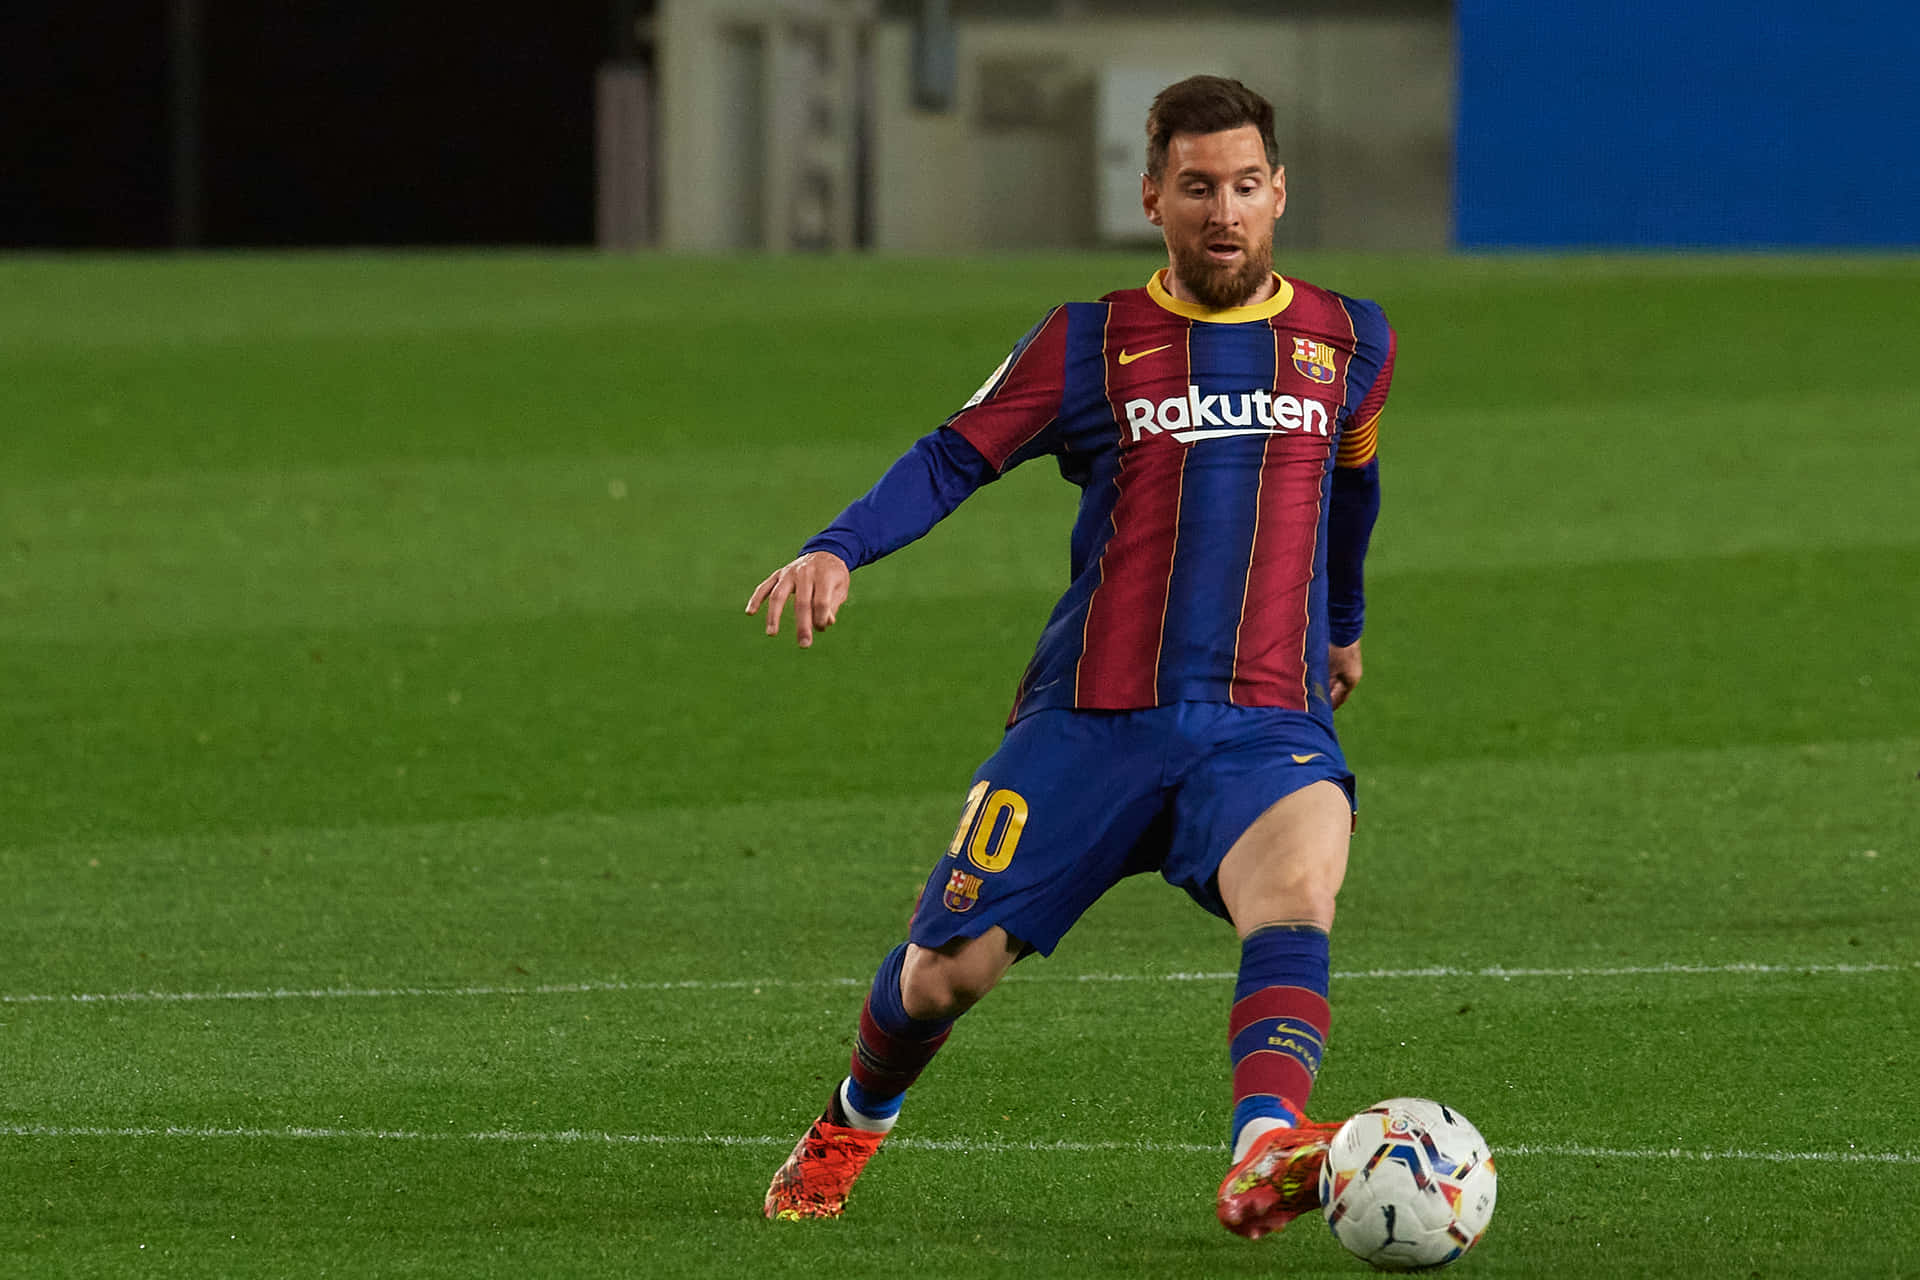 Billede af fodboldspilleren Lionel Messi som computer tapet